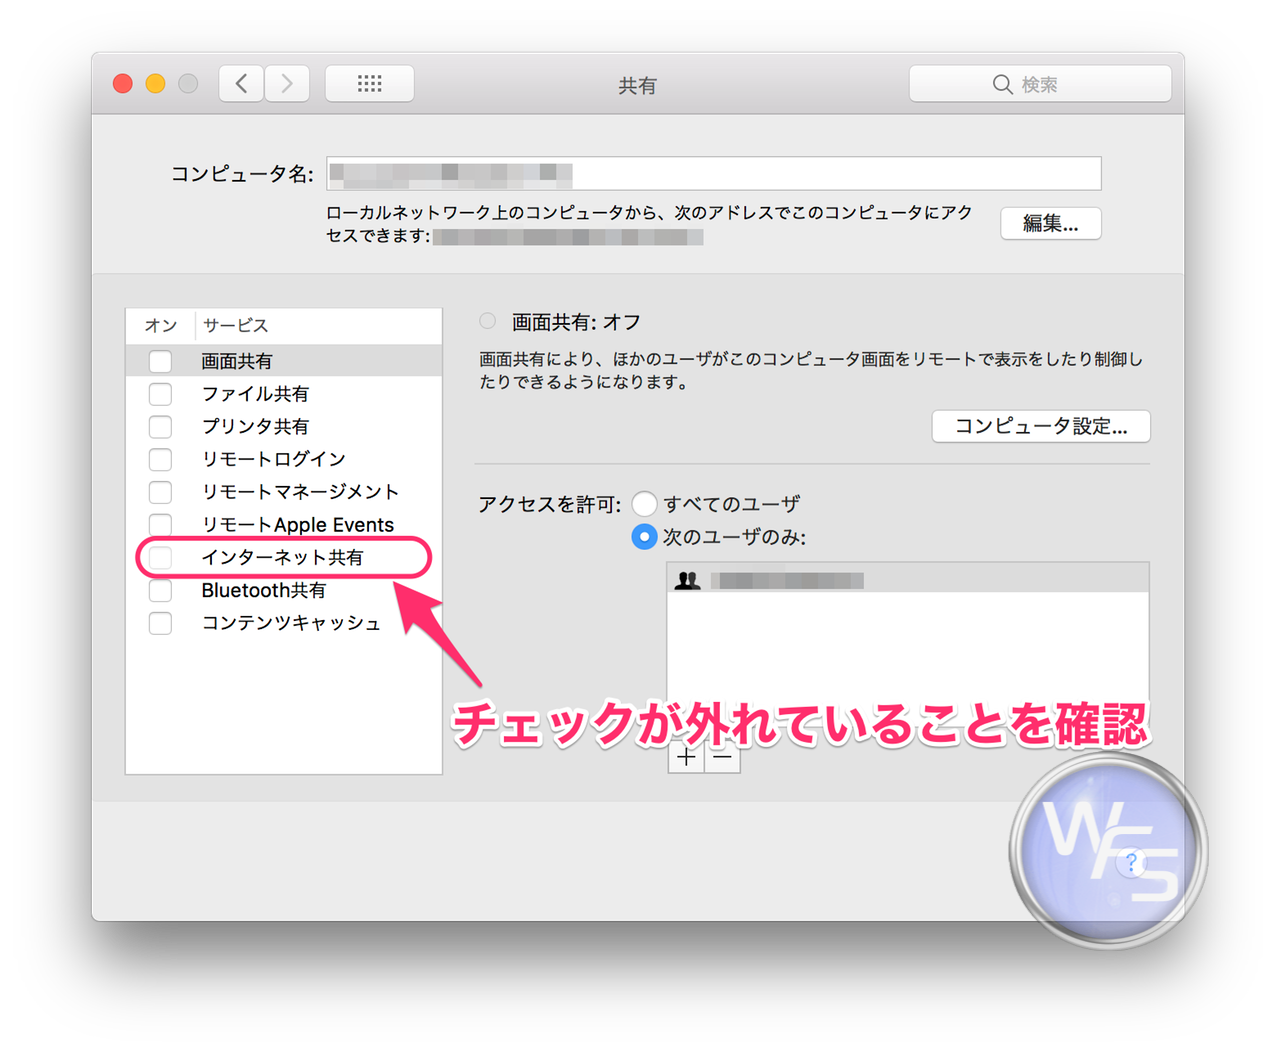 Dropbox xampp mamp mac setting01